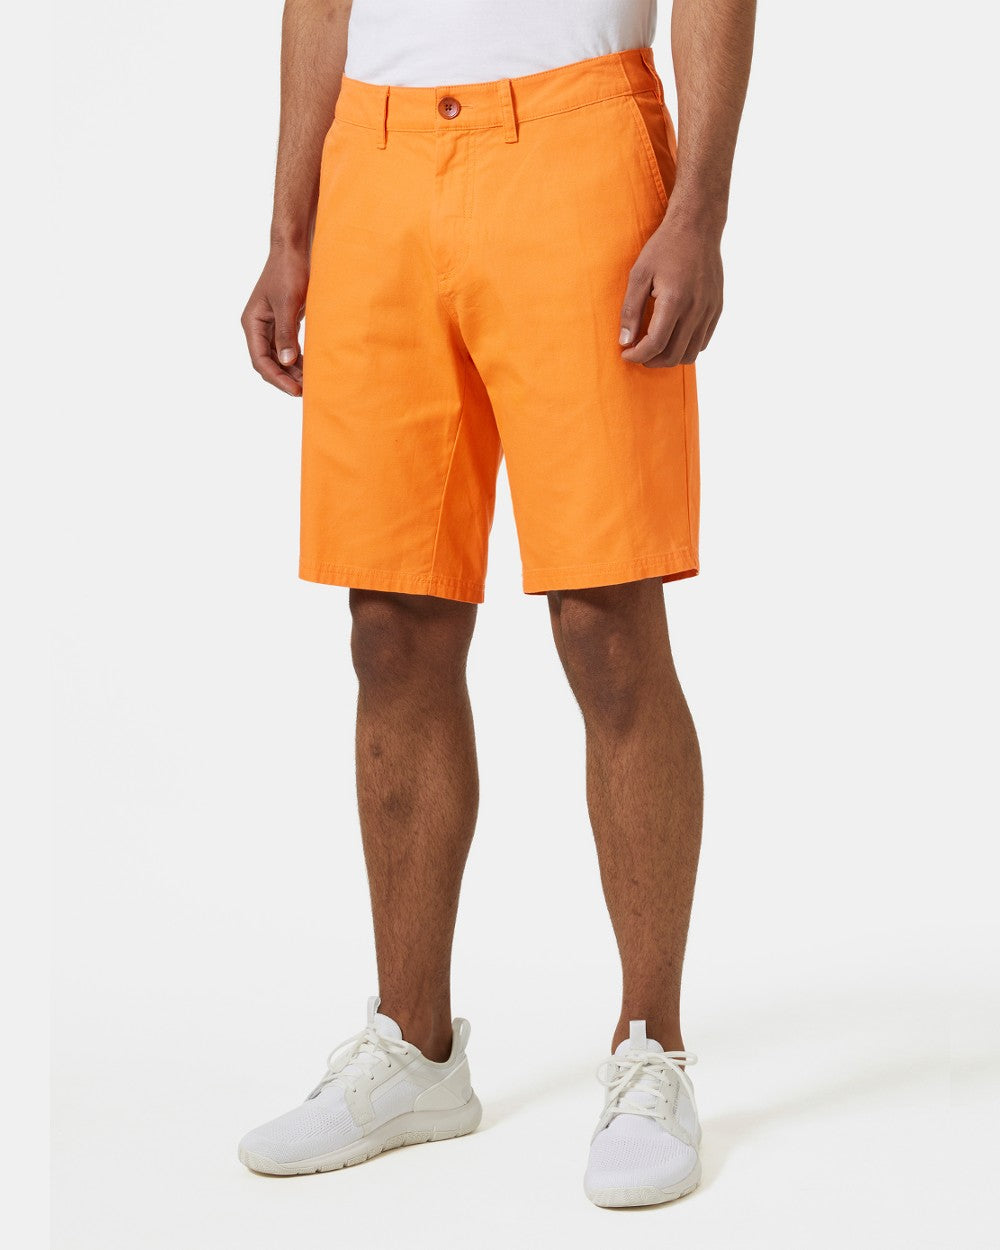 Poppy Orange coloured Helly Hansen Mens Dock Shorts on grey background 